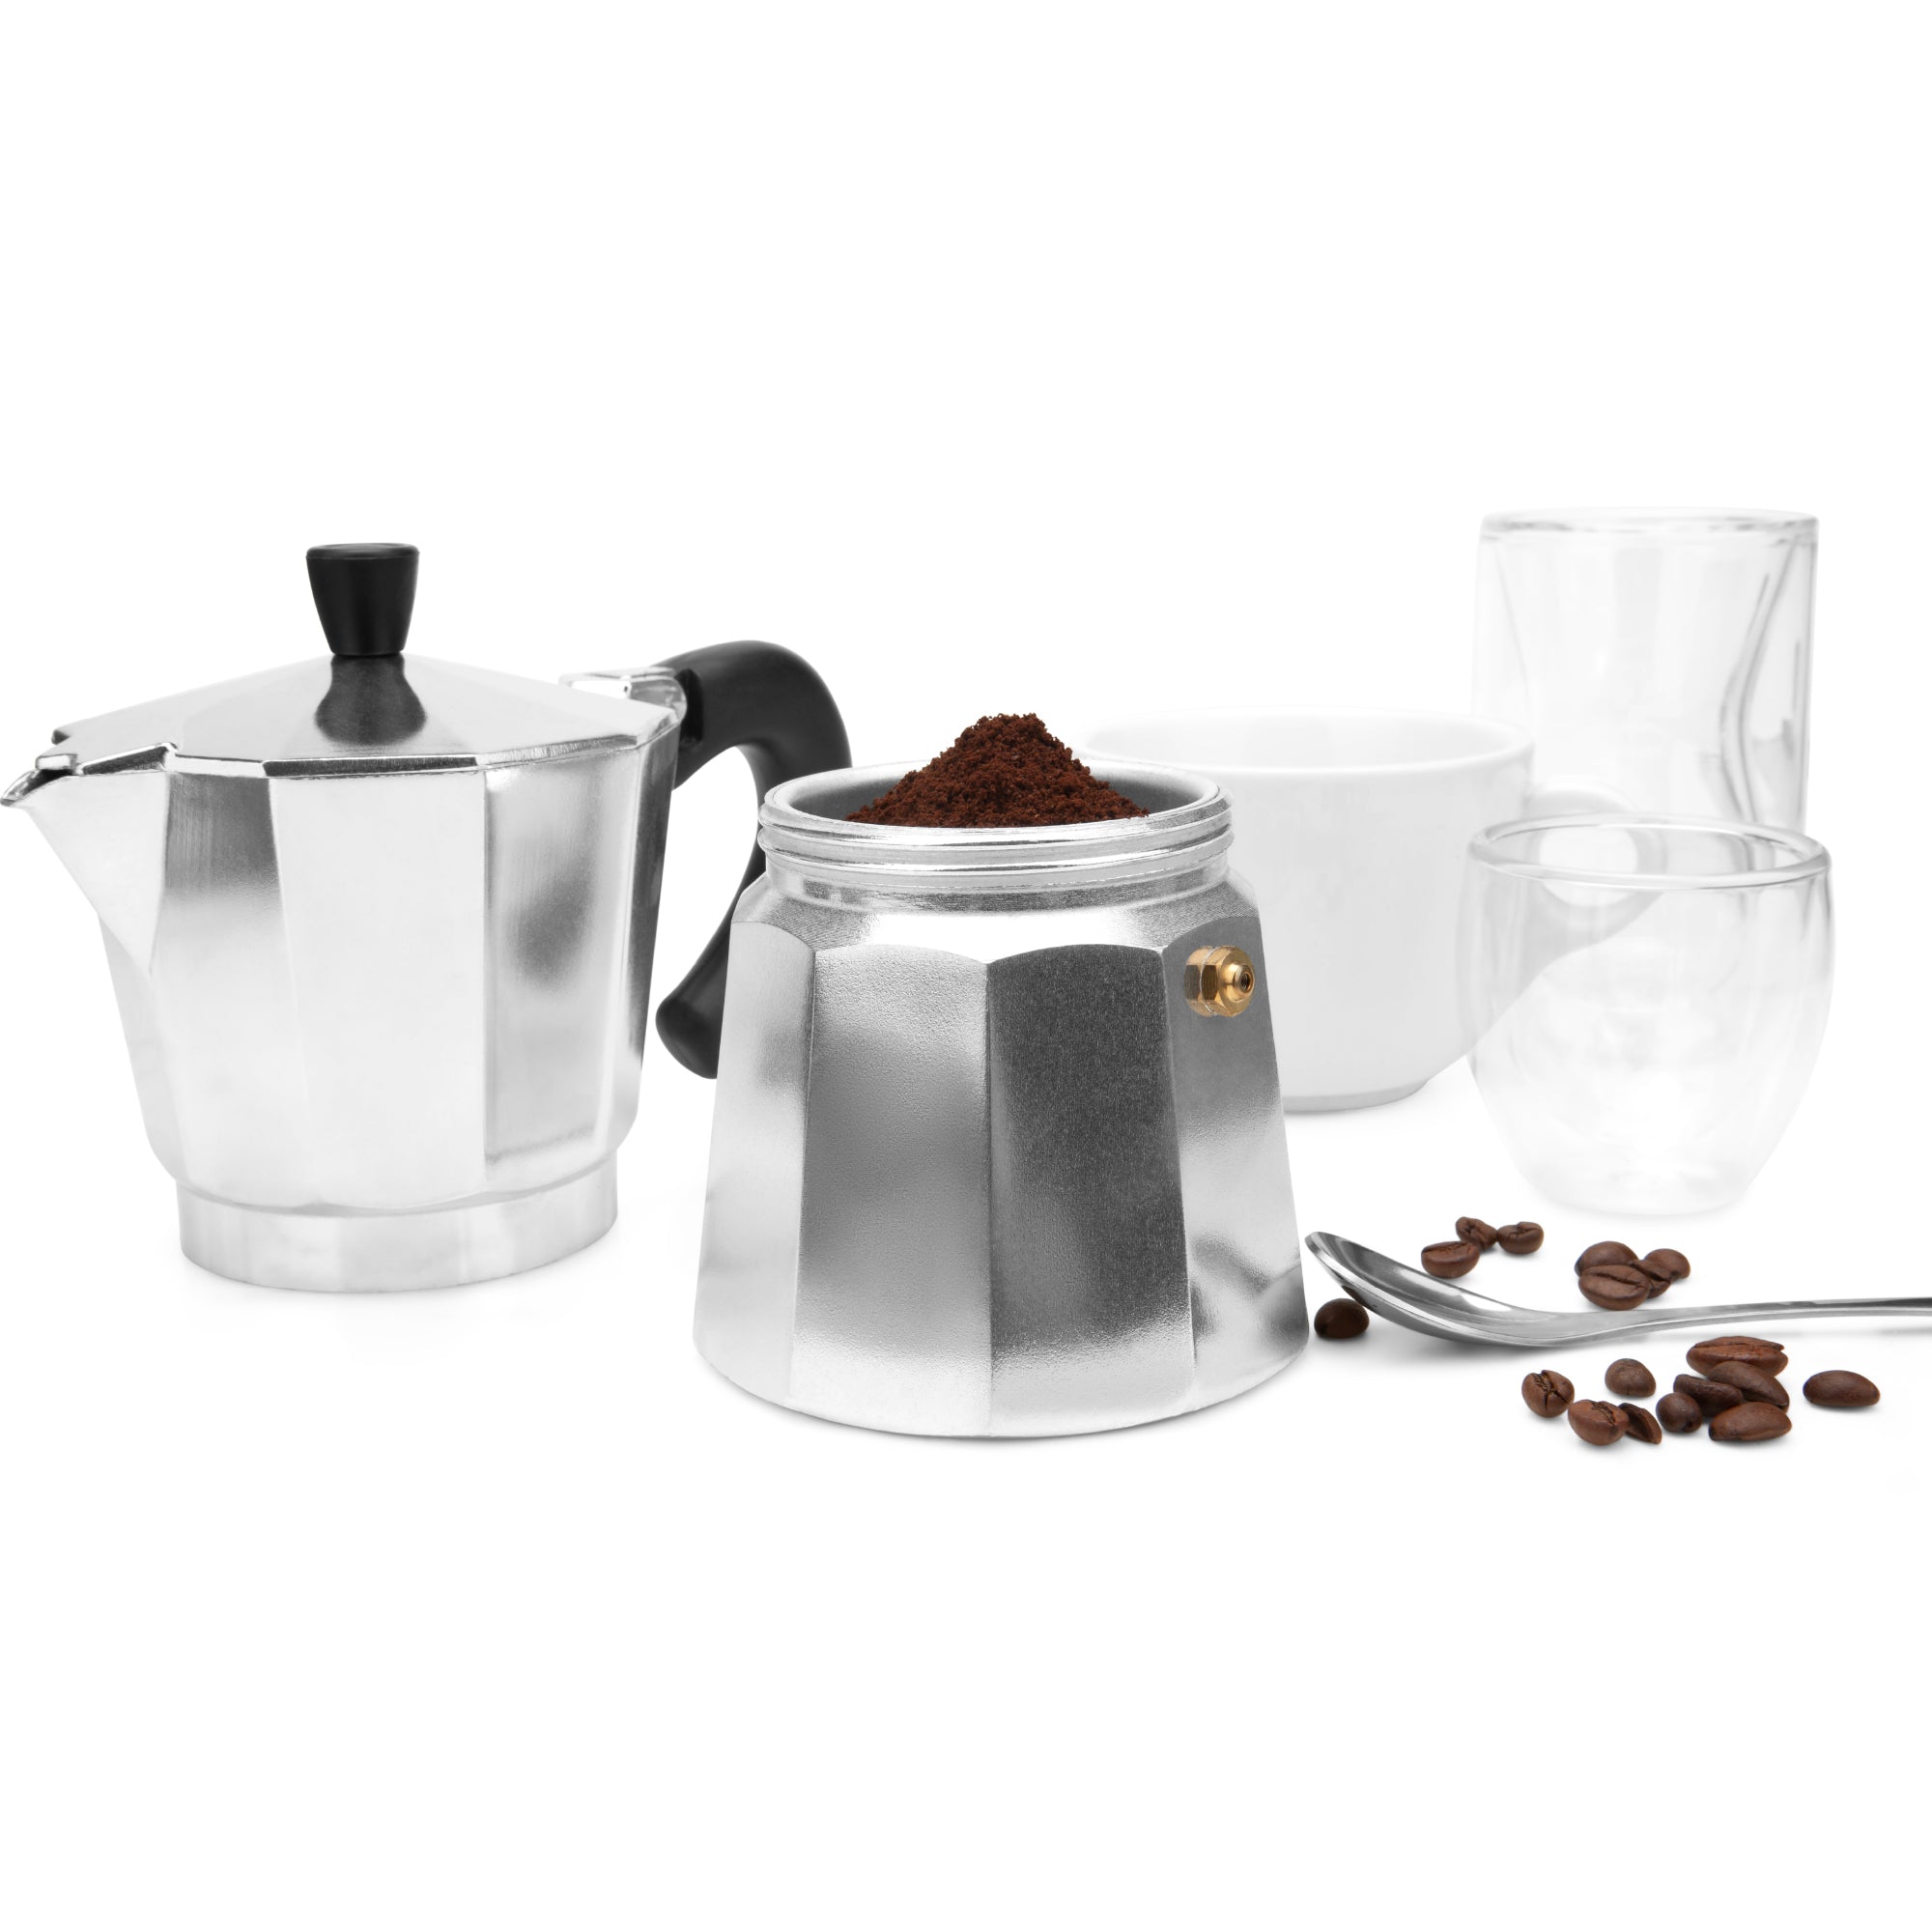 https://espresso-works.com/cdn/shop/products/espressoworks-six-cup-moka-pot-stovetop-espresso-maker-04_2000x.jpg?v=1604993370